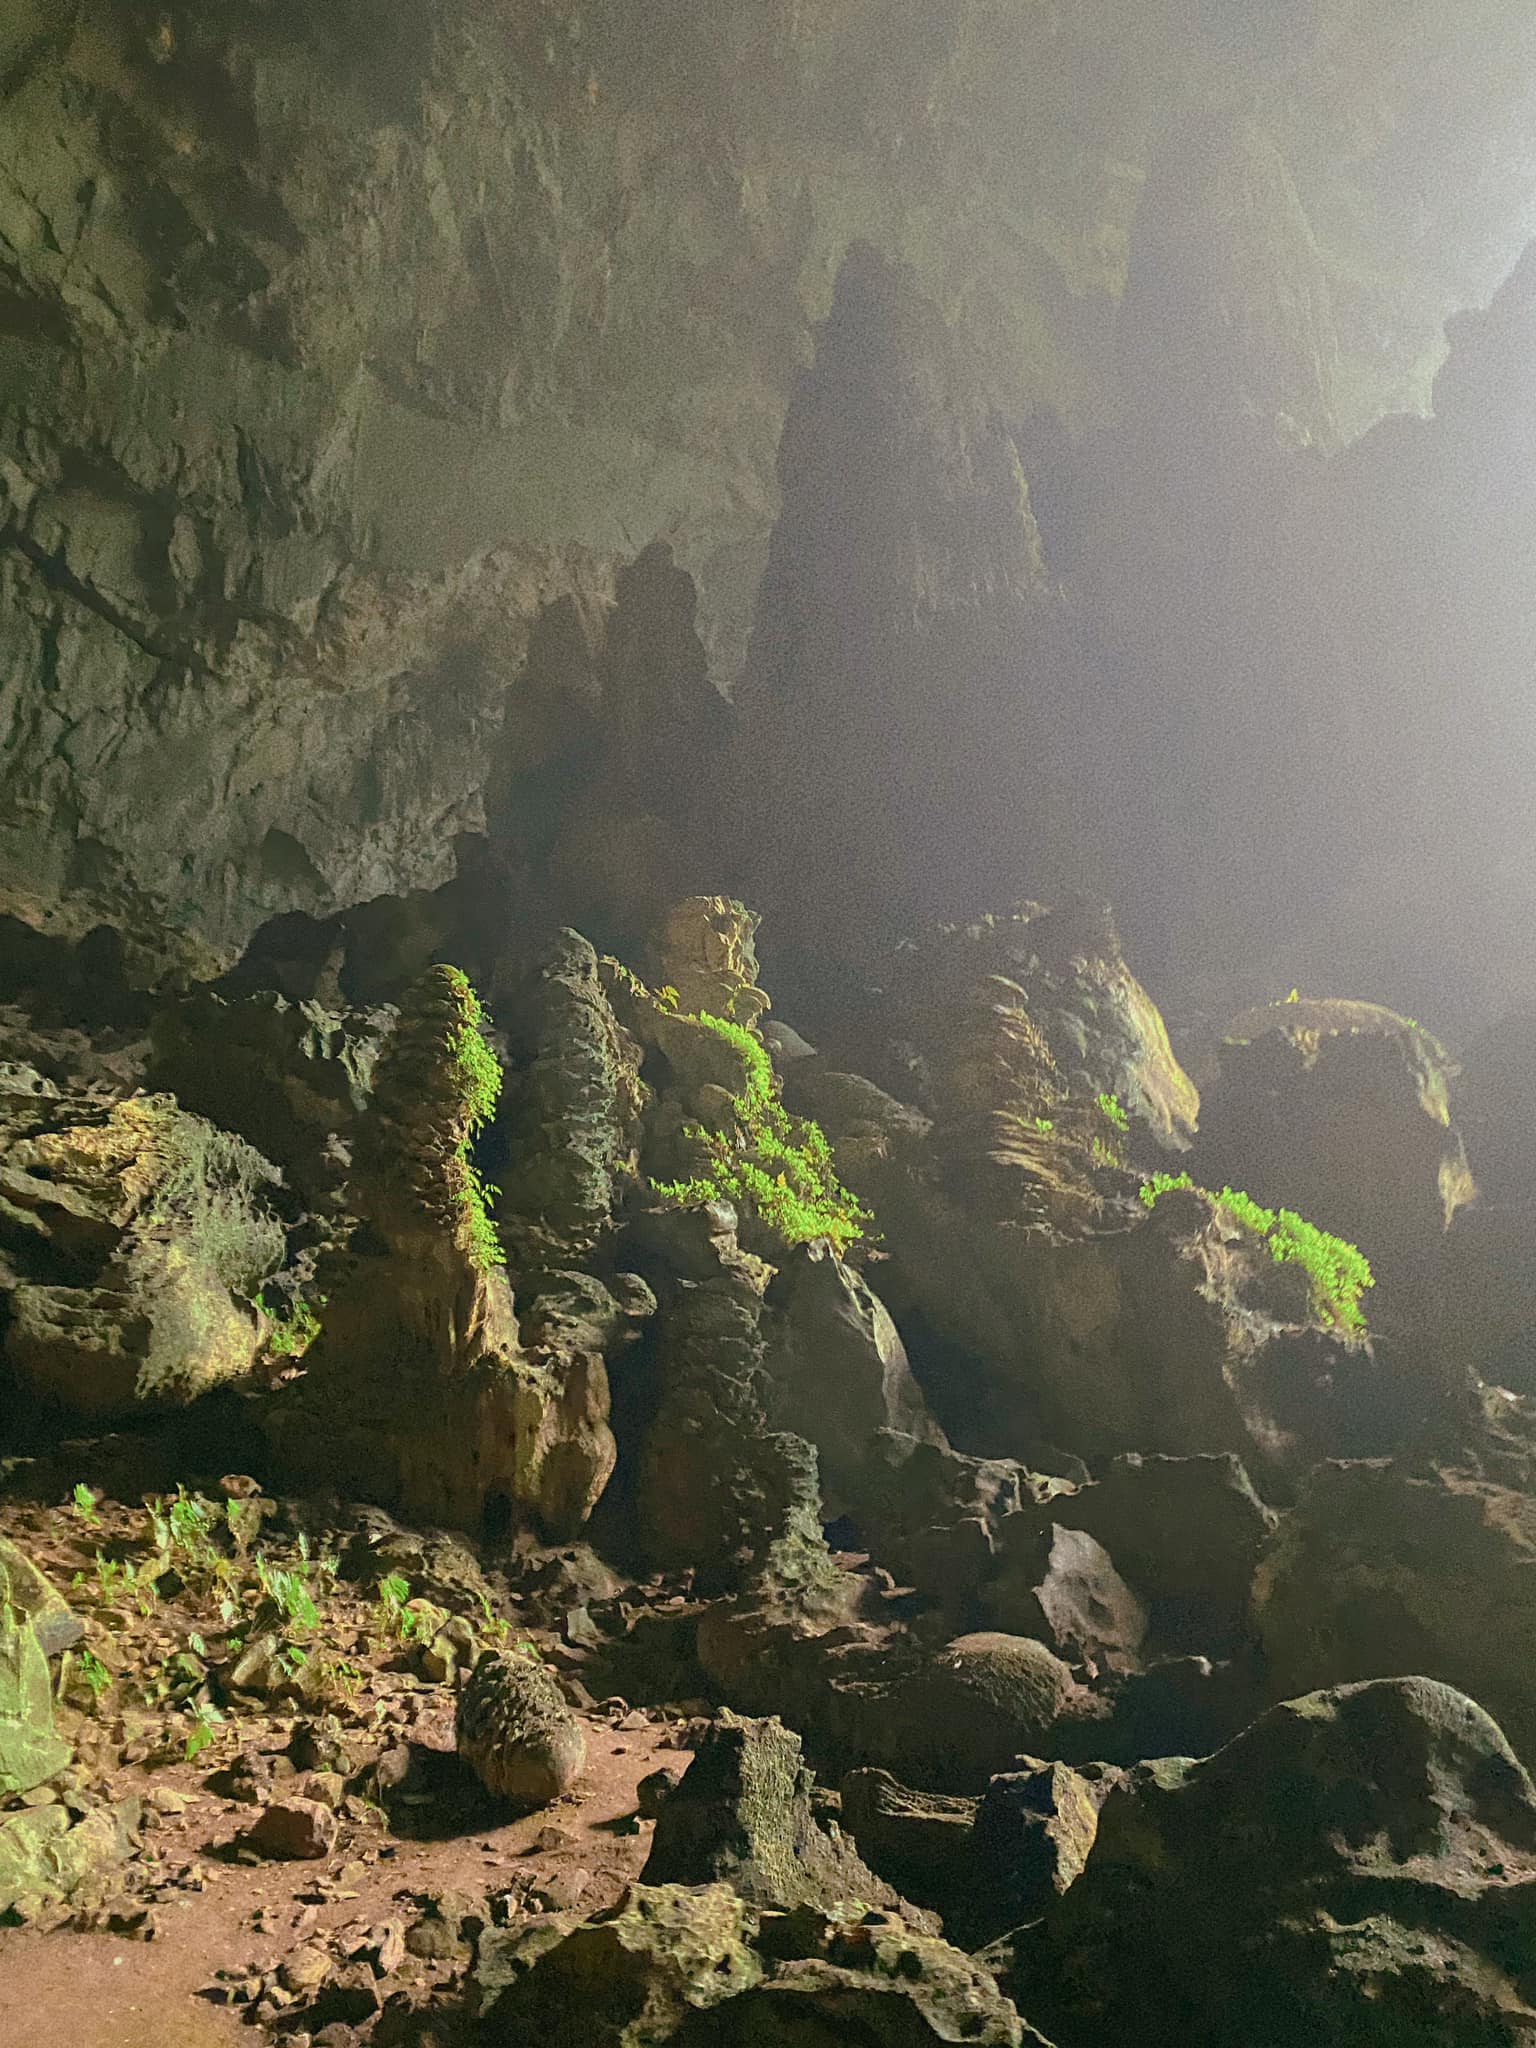 Phát hiện hang động hoang sơ với những khối núi đá vôi hàng trăm triệu tuổi, cách Hà Nội chỉ hơn 200km - Ảnh 9.